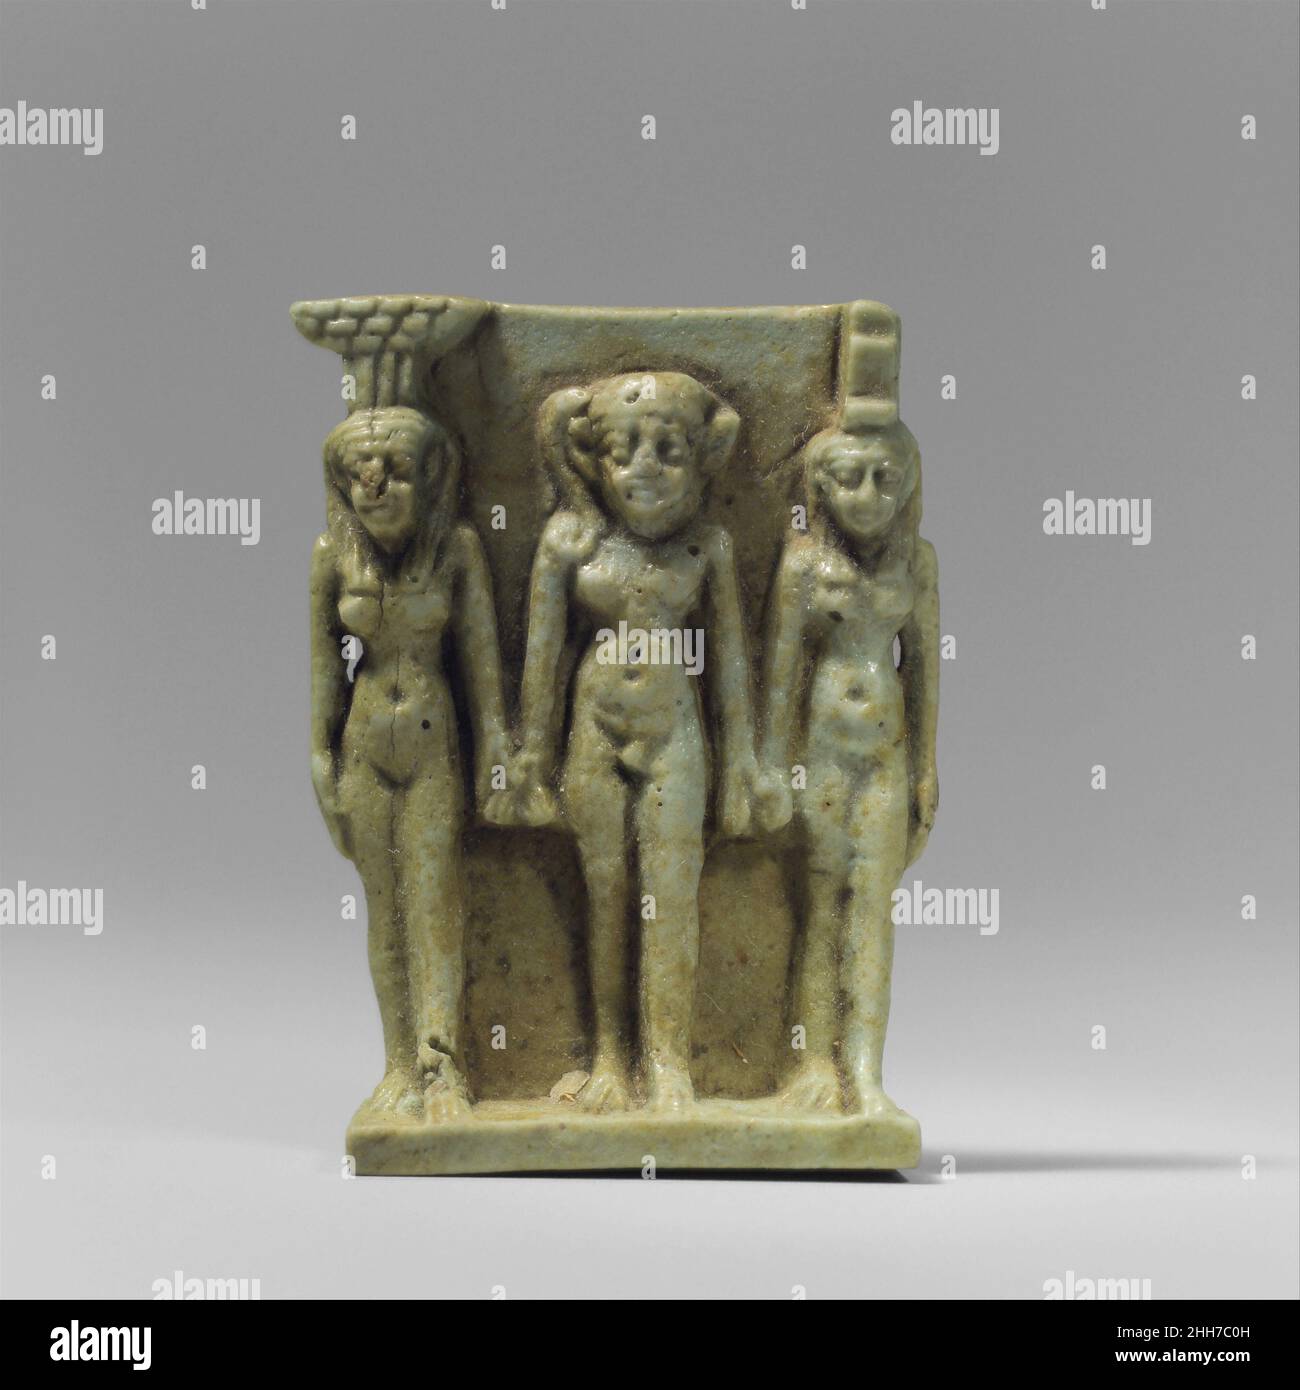 Nephthys, Horus und Isis Amulet 664–525 v. Chr. späte Periode, Saite die drei Gottheiten, die in diesem Dreieramulett dargestellt sind, sind einige der Hauptprotagonisten im Osiride-Mythos, der den Mord und die Wiederbelebung des gottes Osiris und die Geburt und triumphale Rache seines Sohnes Horus erzählt. Nach diesem Mythos kümmerten sich die Schwesterngöttinnen Isis und Nepthys um den Körper von Osiris und beschützten später als kleines Kind seinen Sohn Horus. Horus steht hier im Zentrum der Gruppe, flankiert von seiner Mutter Isis auf der linken Seite und seiner Tante Nephthys auf der rechten Seite. ISIS wird durch die auf ihrem Kopf aufgestellte Thronhieroglyphenyphenyone identifiziert Stockfoto